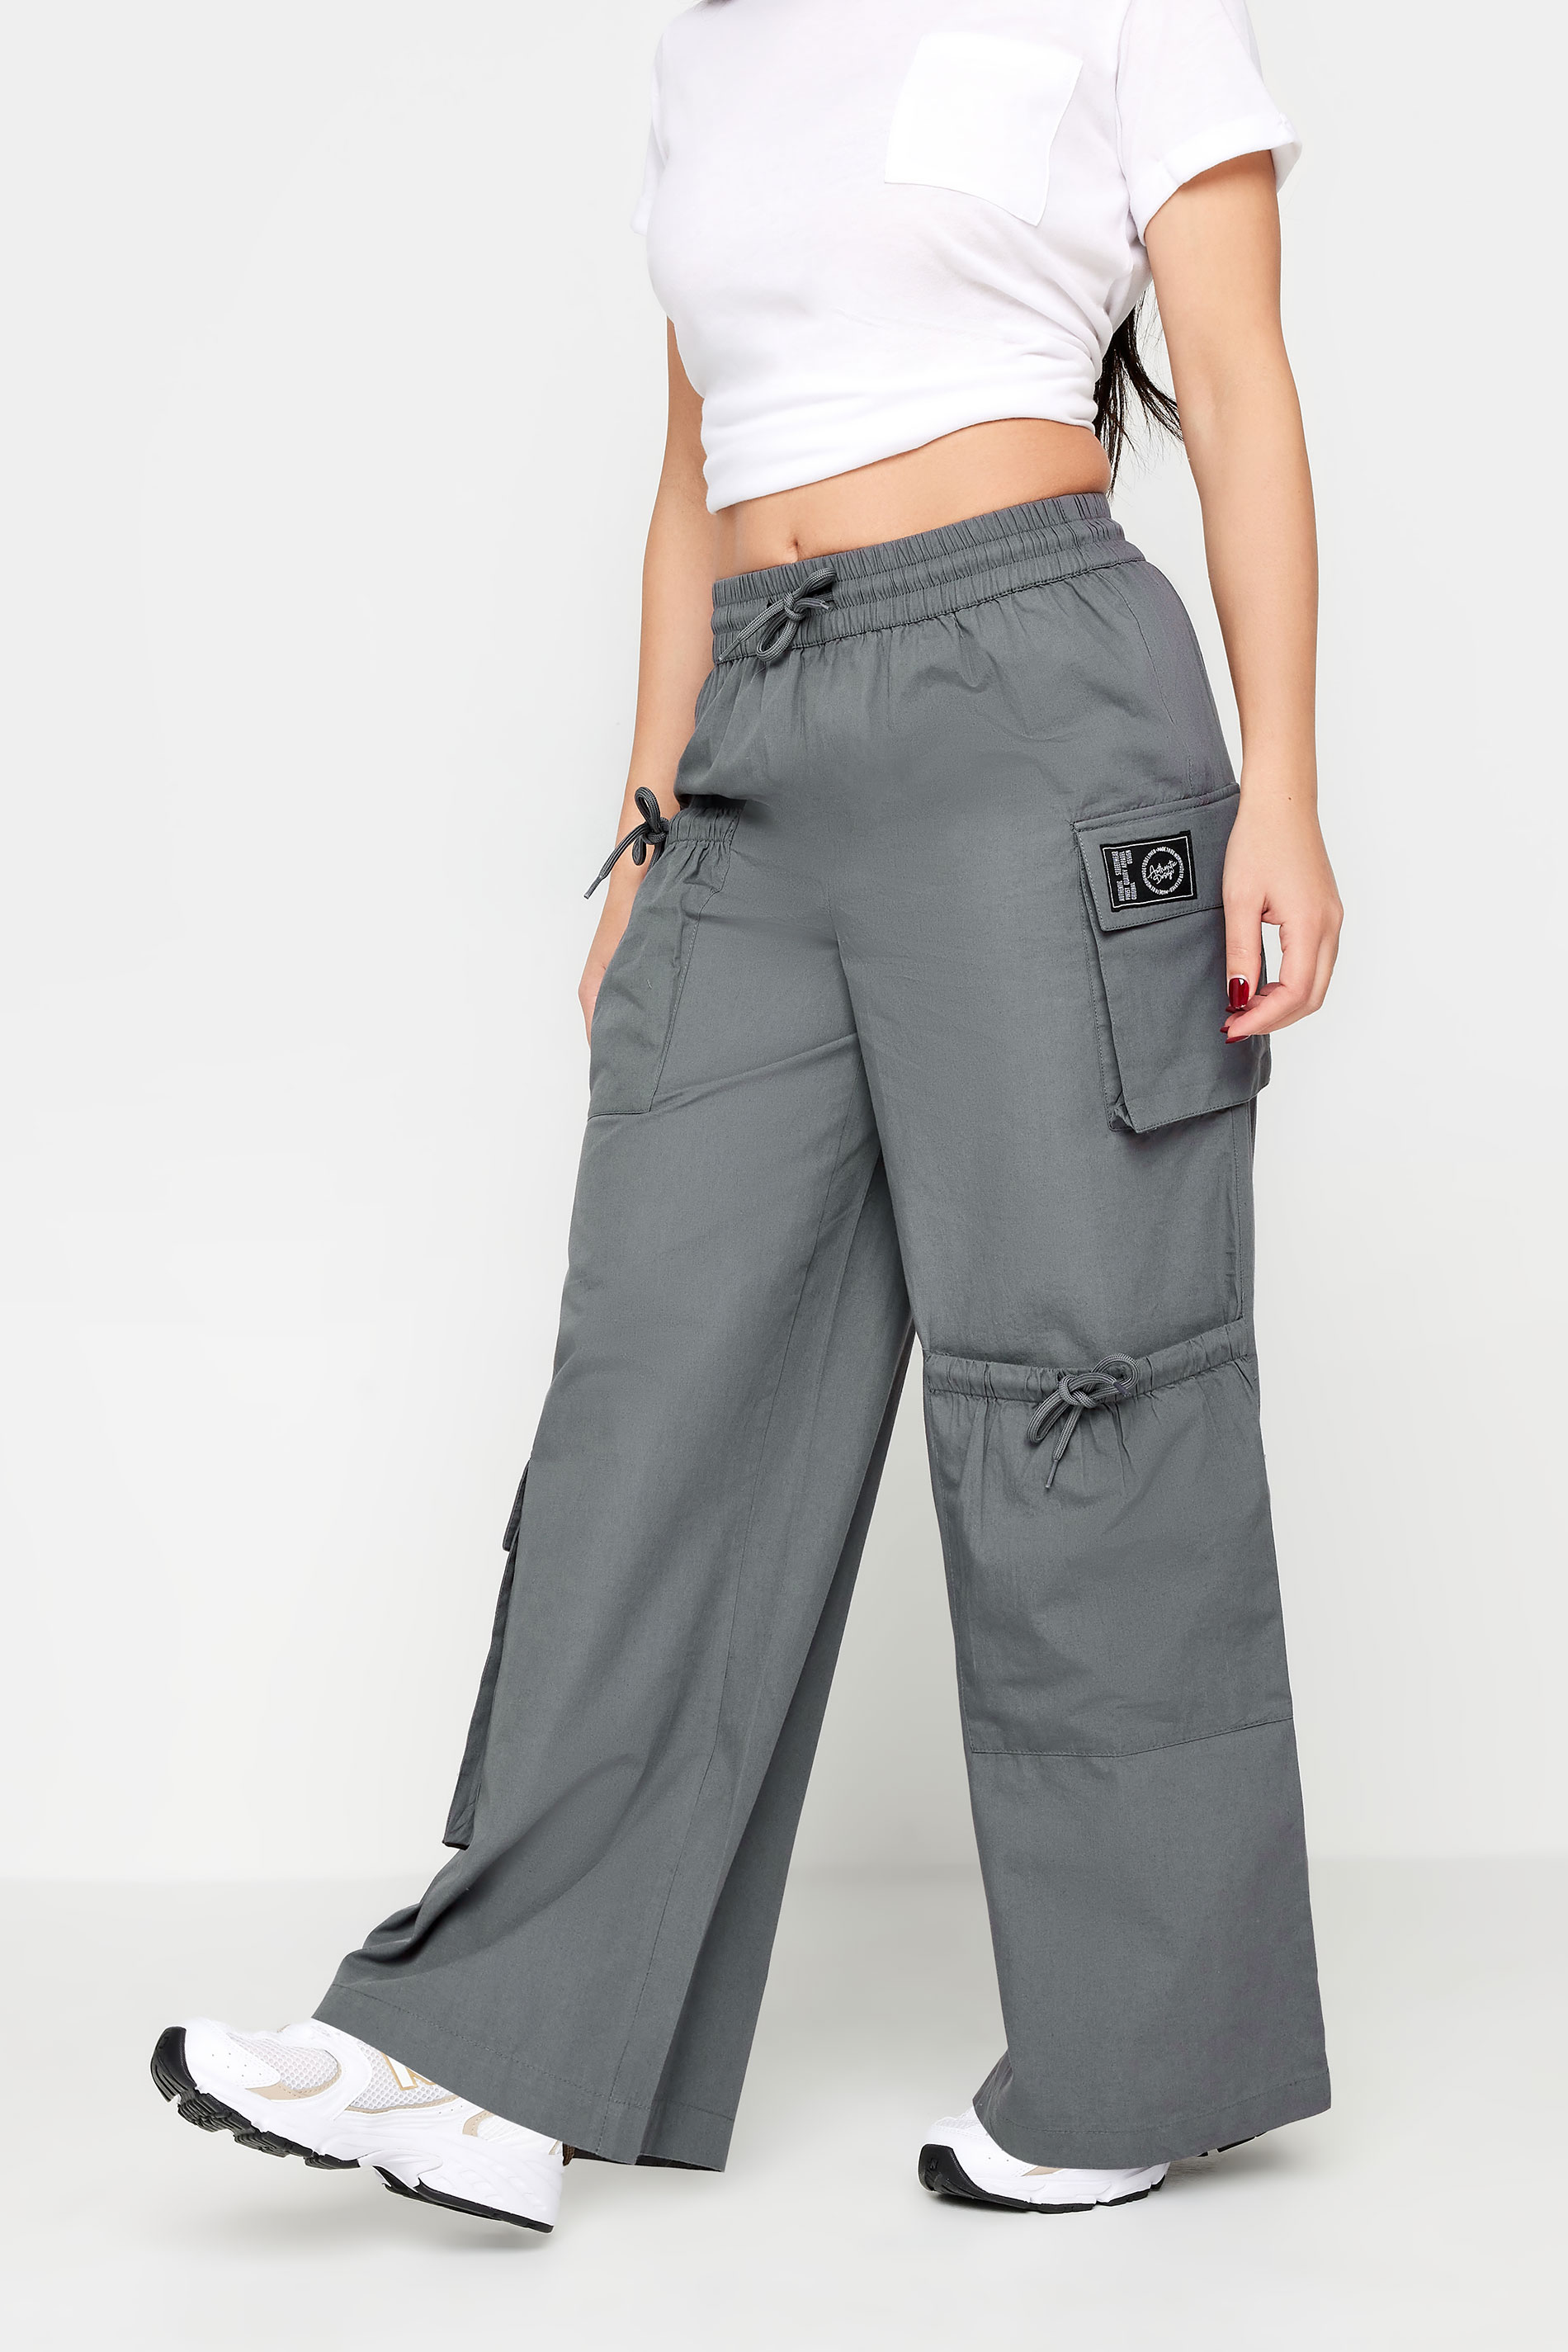 PixieGirl Grey Pocket Detail Cargo Trousers | PixieGirl